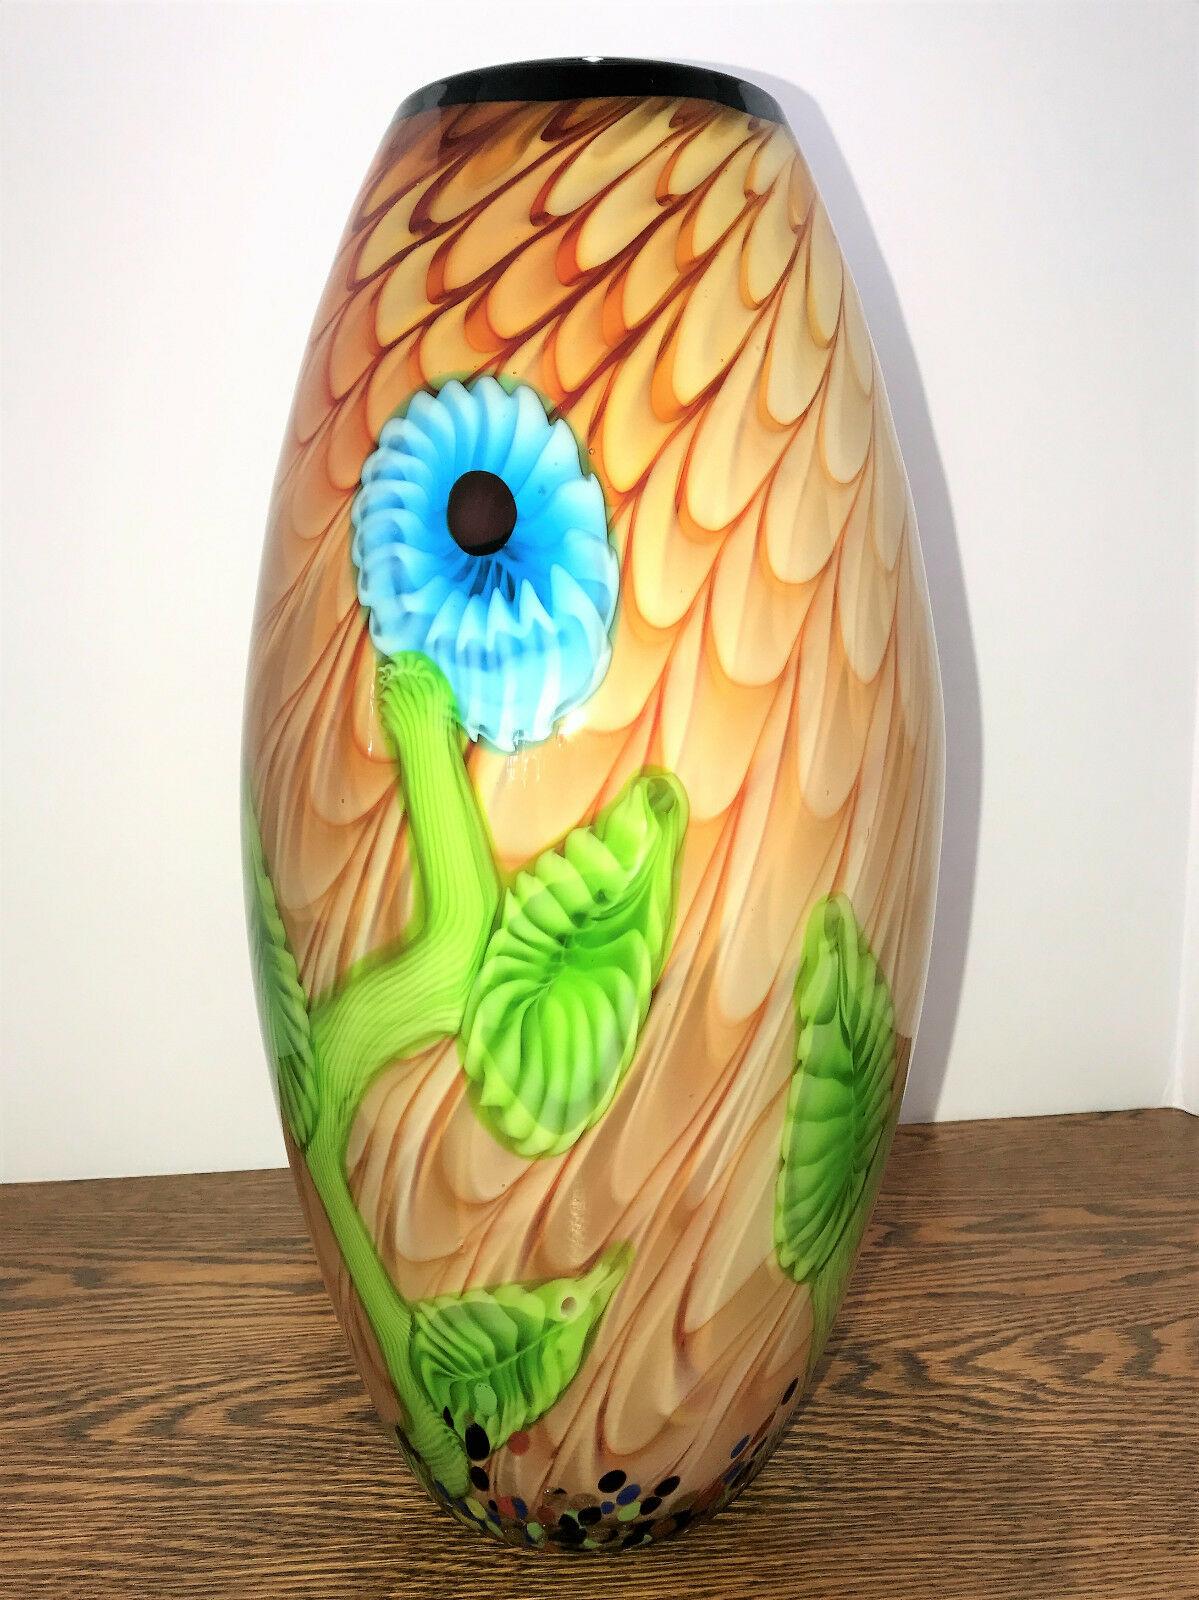 Für die Liebhaber von Murano, eine verführerische Vase aus Kunstglas mit floralem Design. Einfach schön, mehrfarbig mit einem abstrakten Blumenmuster. Vase Maßnahmen ca. 15 Zoll hoch x 7 Zoll breit mit einem 24 